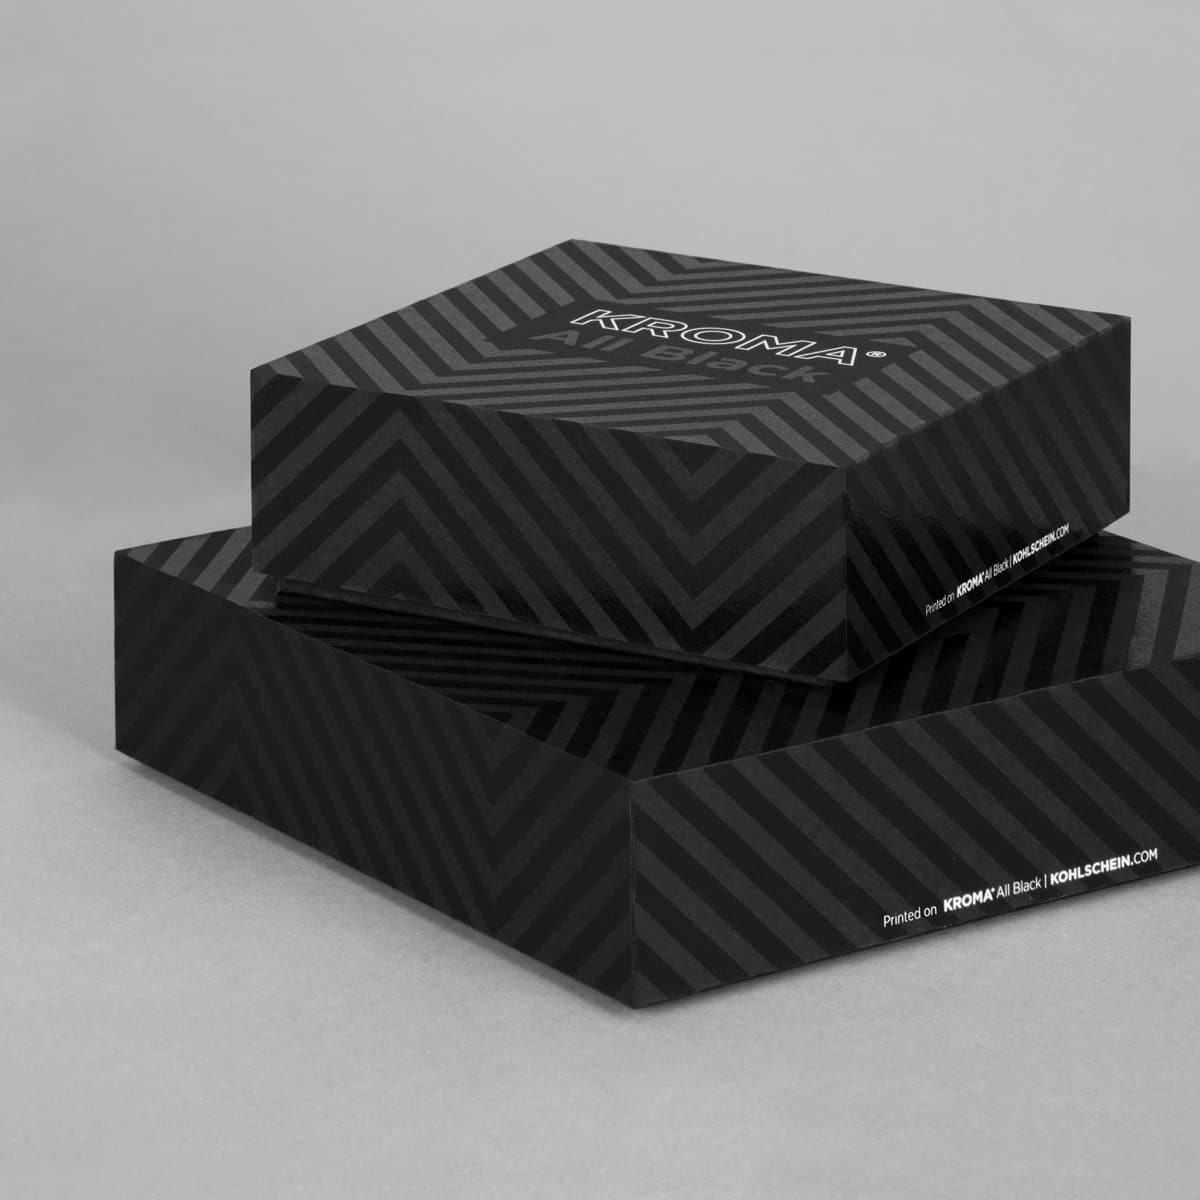 Siebdruck Schachteln aus KROMA All Black